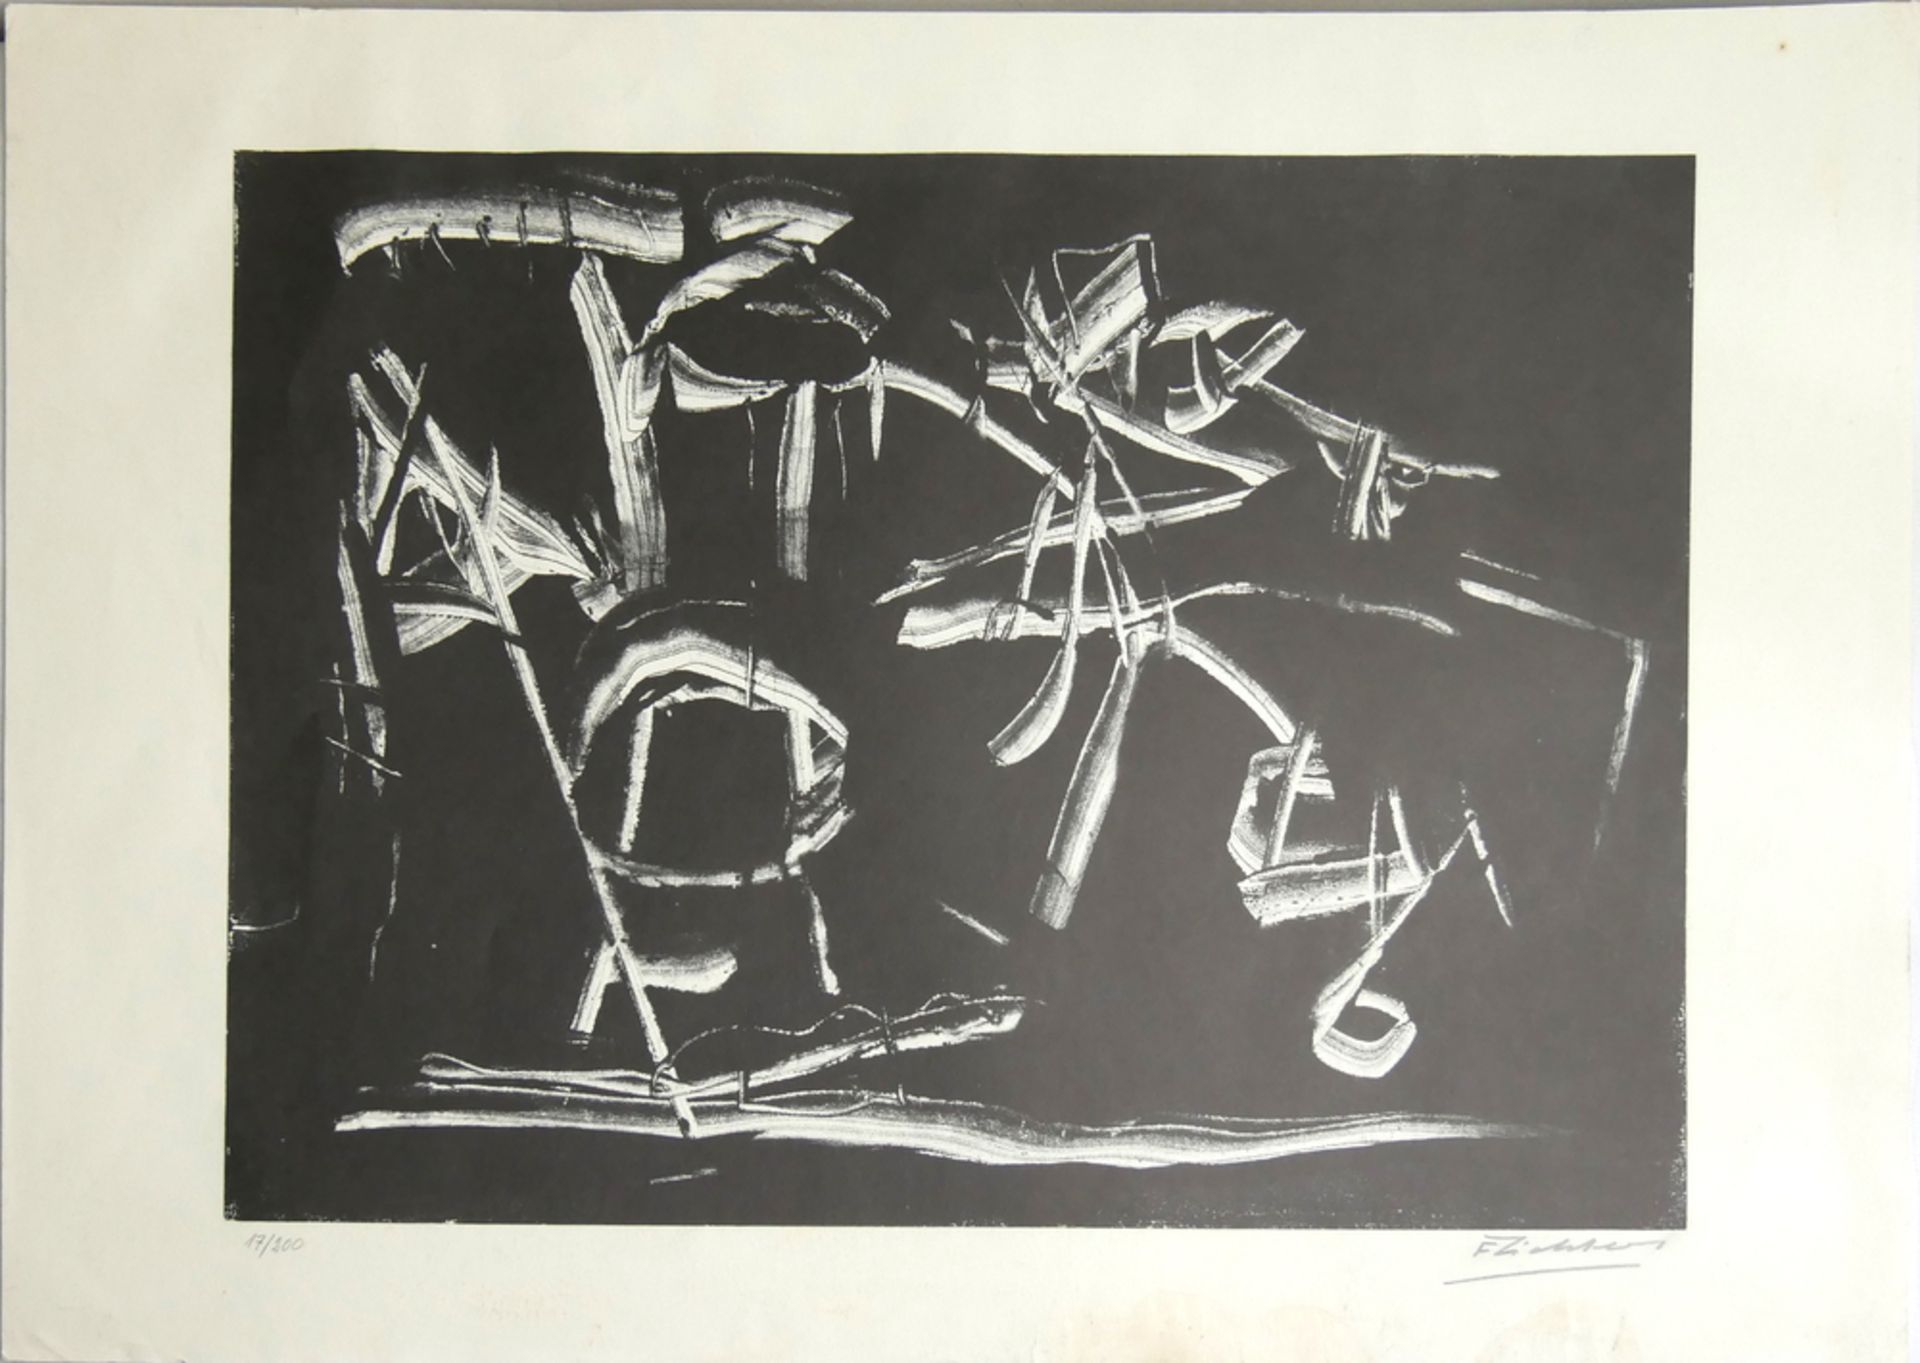 Druckgrafik "abstrakte Komposition", unleserliche Signatur unten rechts, 17/200, Maße: Breite ca. 61